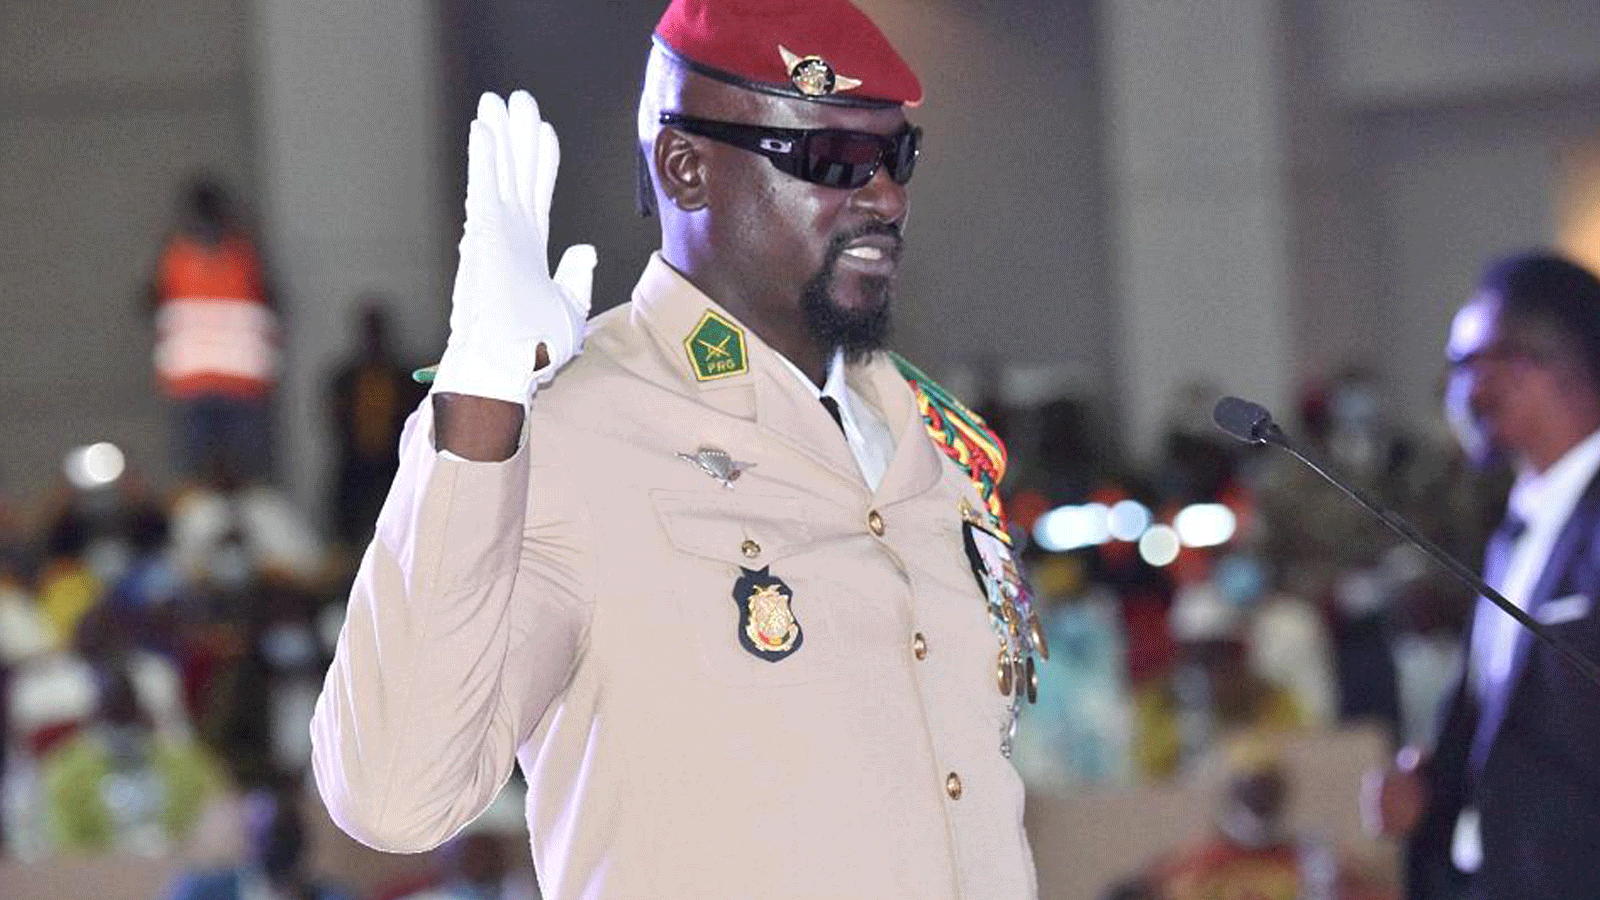 زعيم المجلس العسكري الغيني العقيد مامادي دومبويا، يرفع يده في مراسم أداء اليمين كرئيس لانتقال البلاد في 1 تشرين الأول/ أكتوبر 2021 في كوناكري.